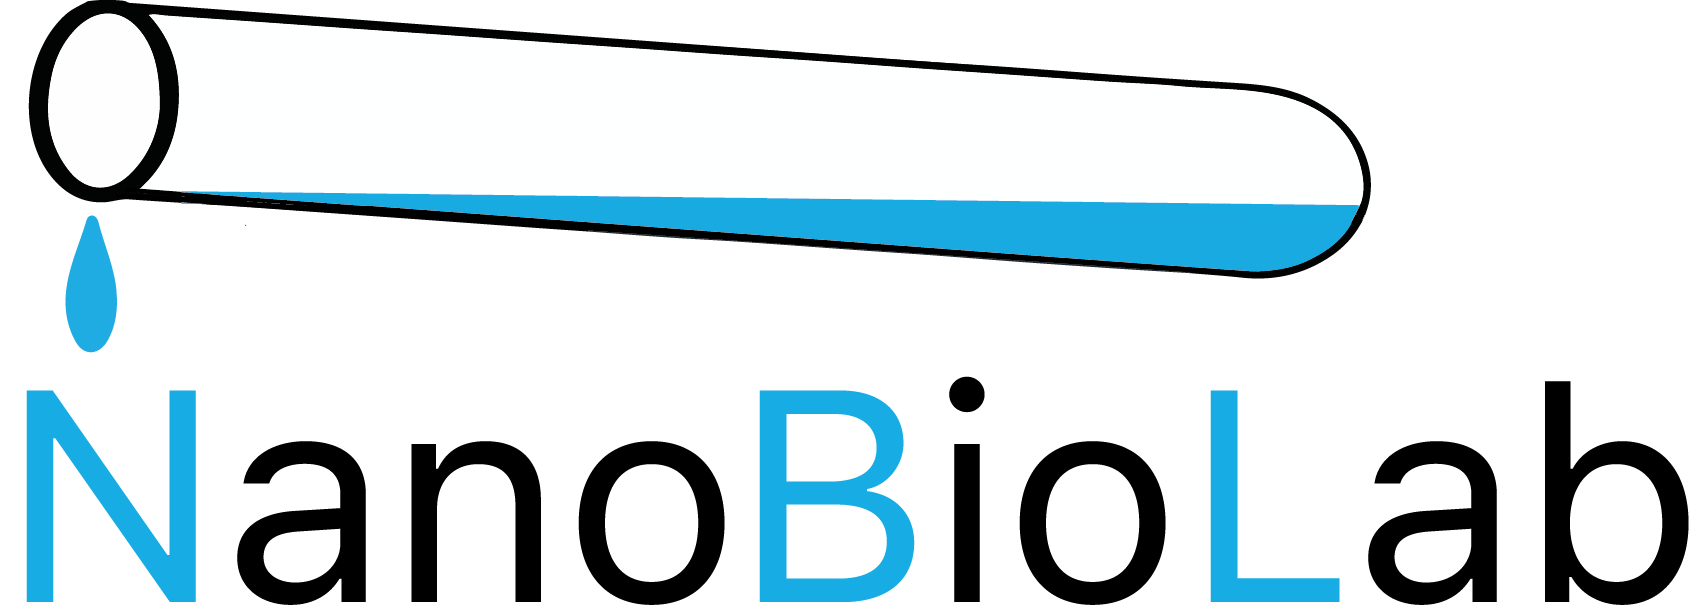 NanoBioLab Logo: in der unteren Zeile steht NanoBioLab, wobei das N von Nano, das B von Bio und das L von Lab groß und blau geschrieben sind und die andern Buchstaben sind klein und schwarz. Über allen Buchstaben sieht man ein leicht schräg gezeichnetes Reagenzglas mit einer blauen Flüssigkeit und ein Tropfen hängt über dem N